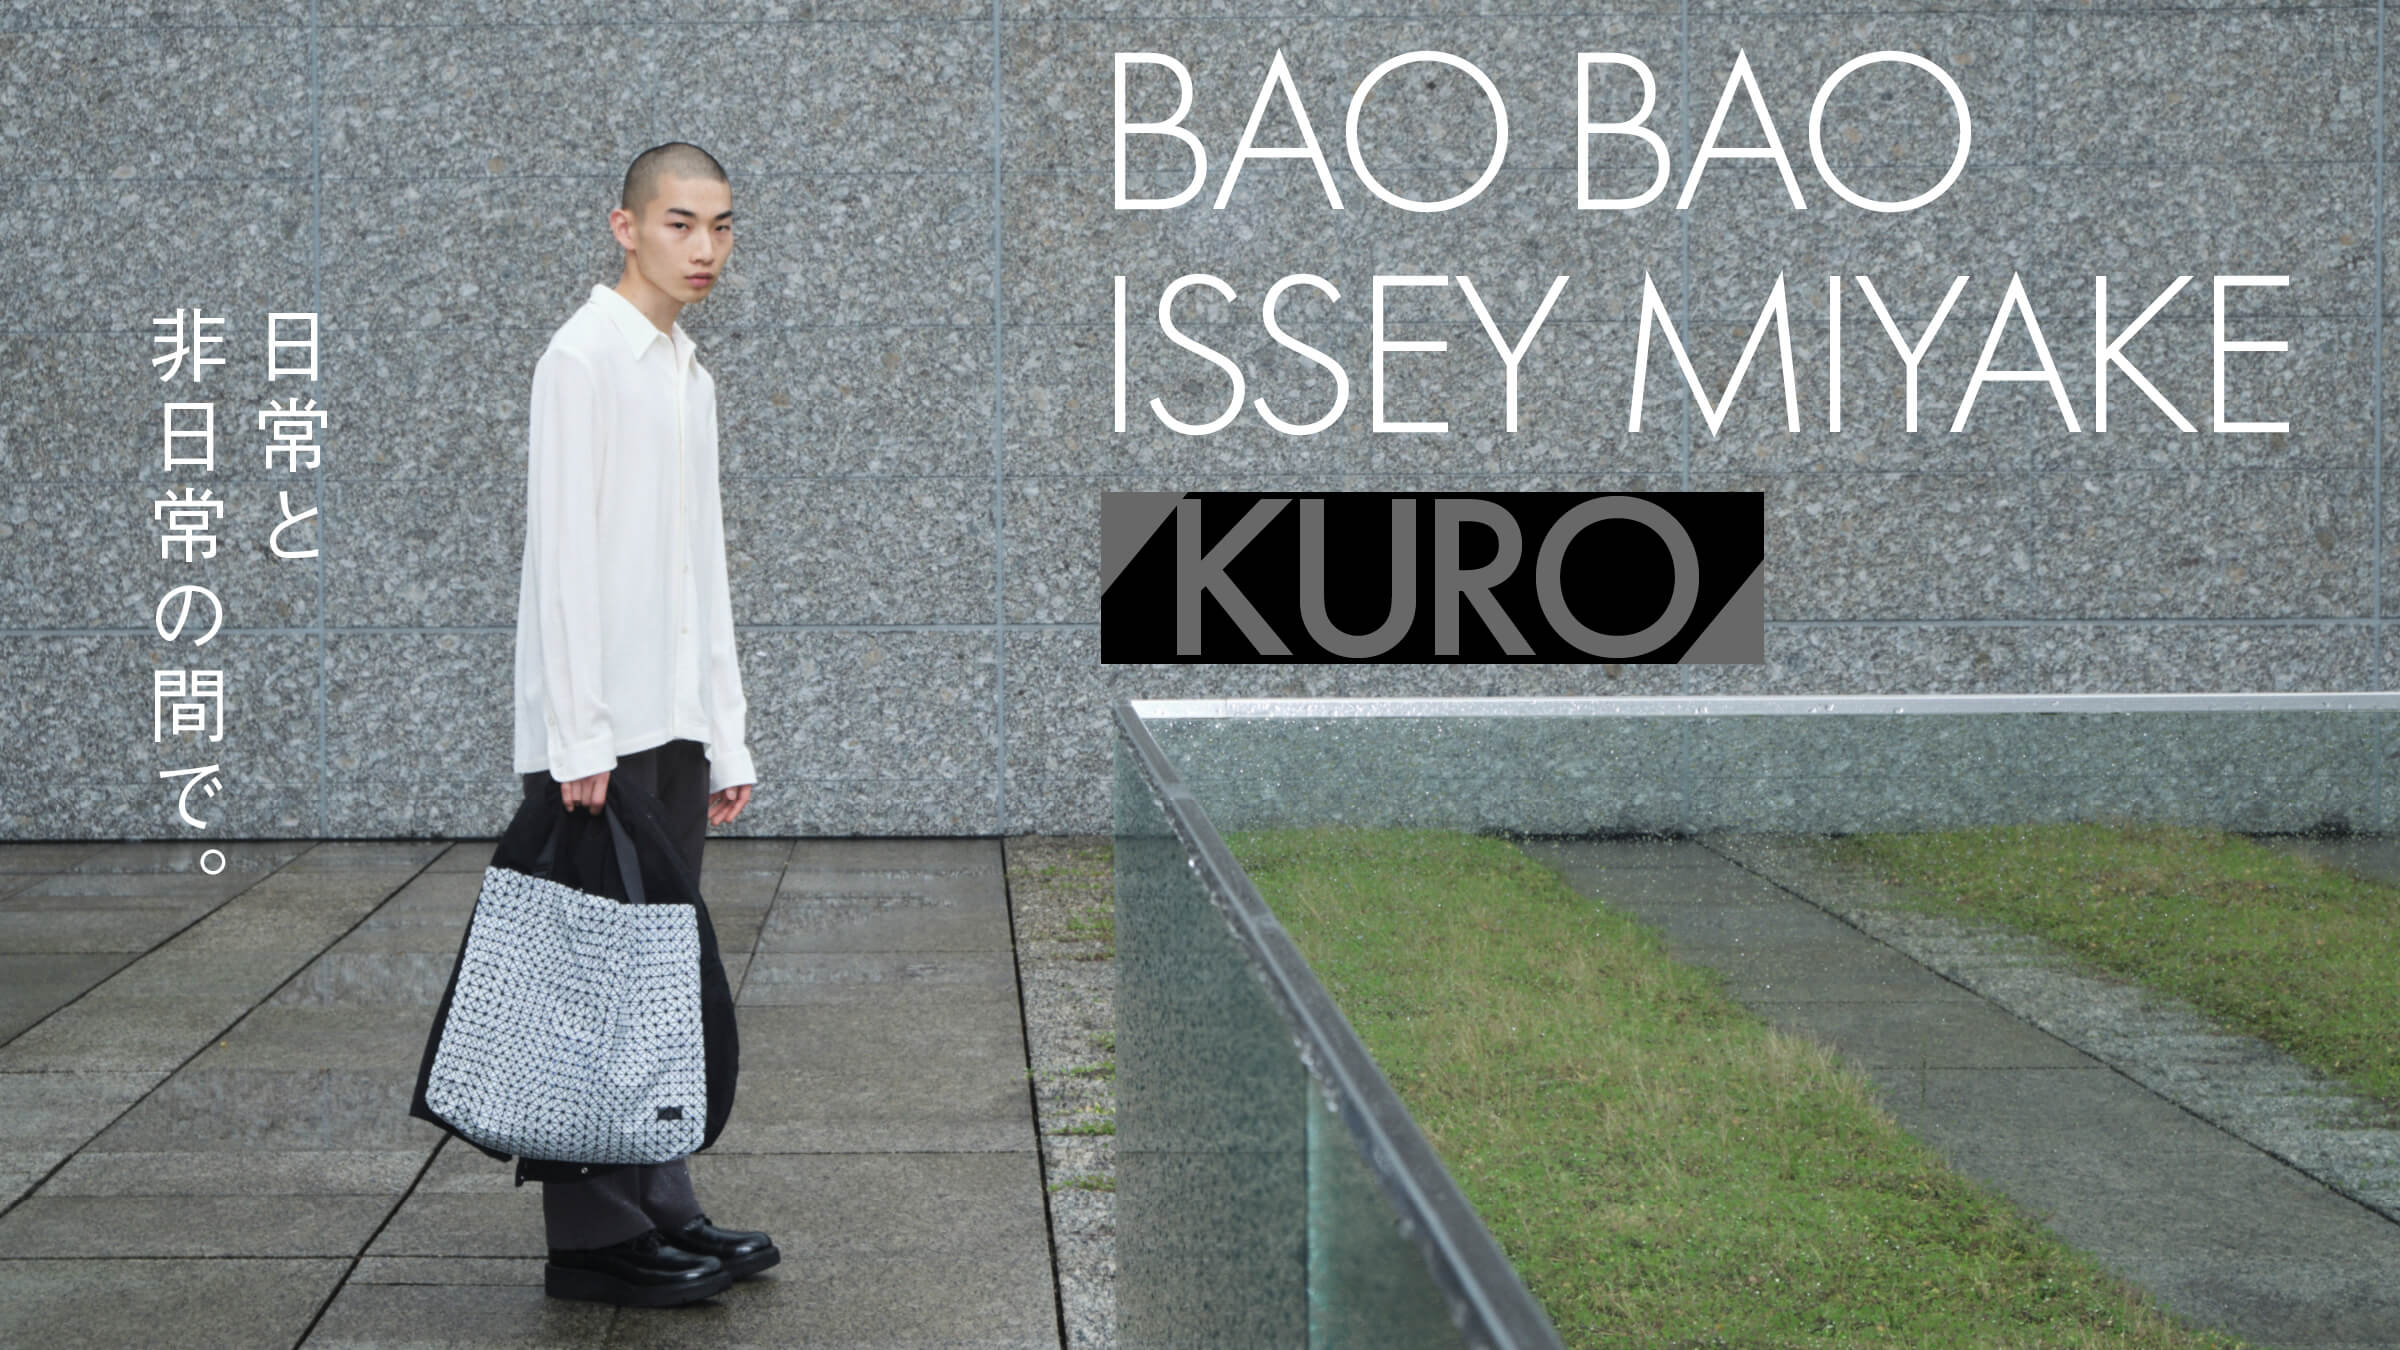 BAO BAO ISSEY MIYAKE「KURO」日常と非日常の間で。 | feature ...